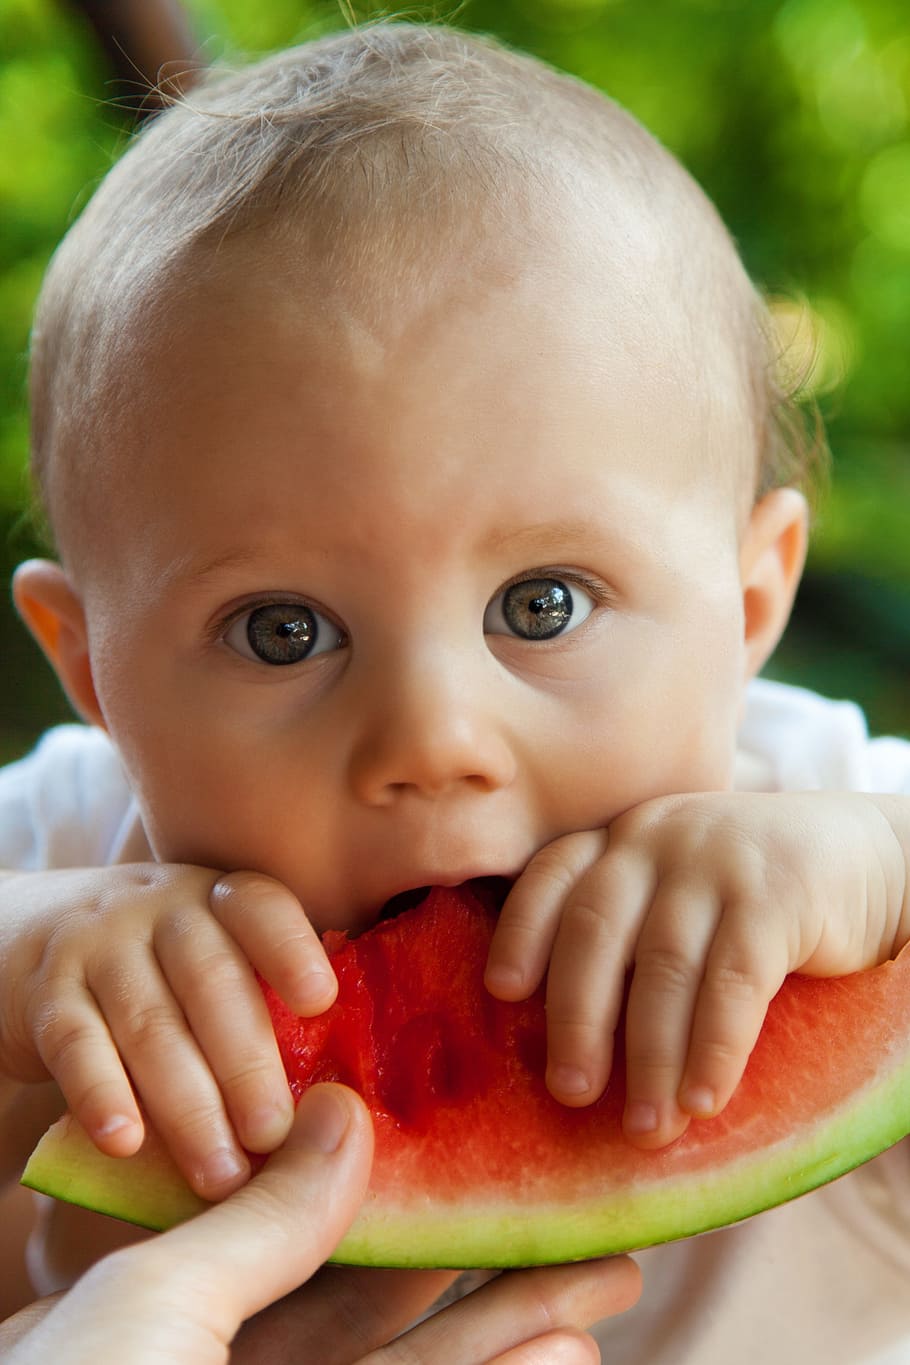 スイカを食べる赤ちゃん, 赤ちゃん, 一口, 男の子, 子供, かわいい, 食べる, 食べ物, 果物, 楽しい